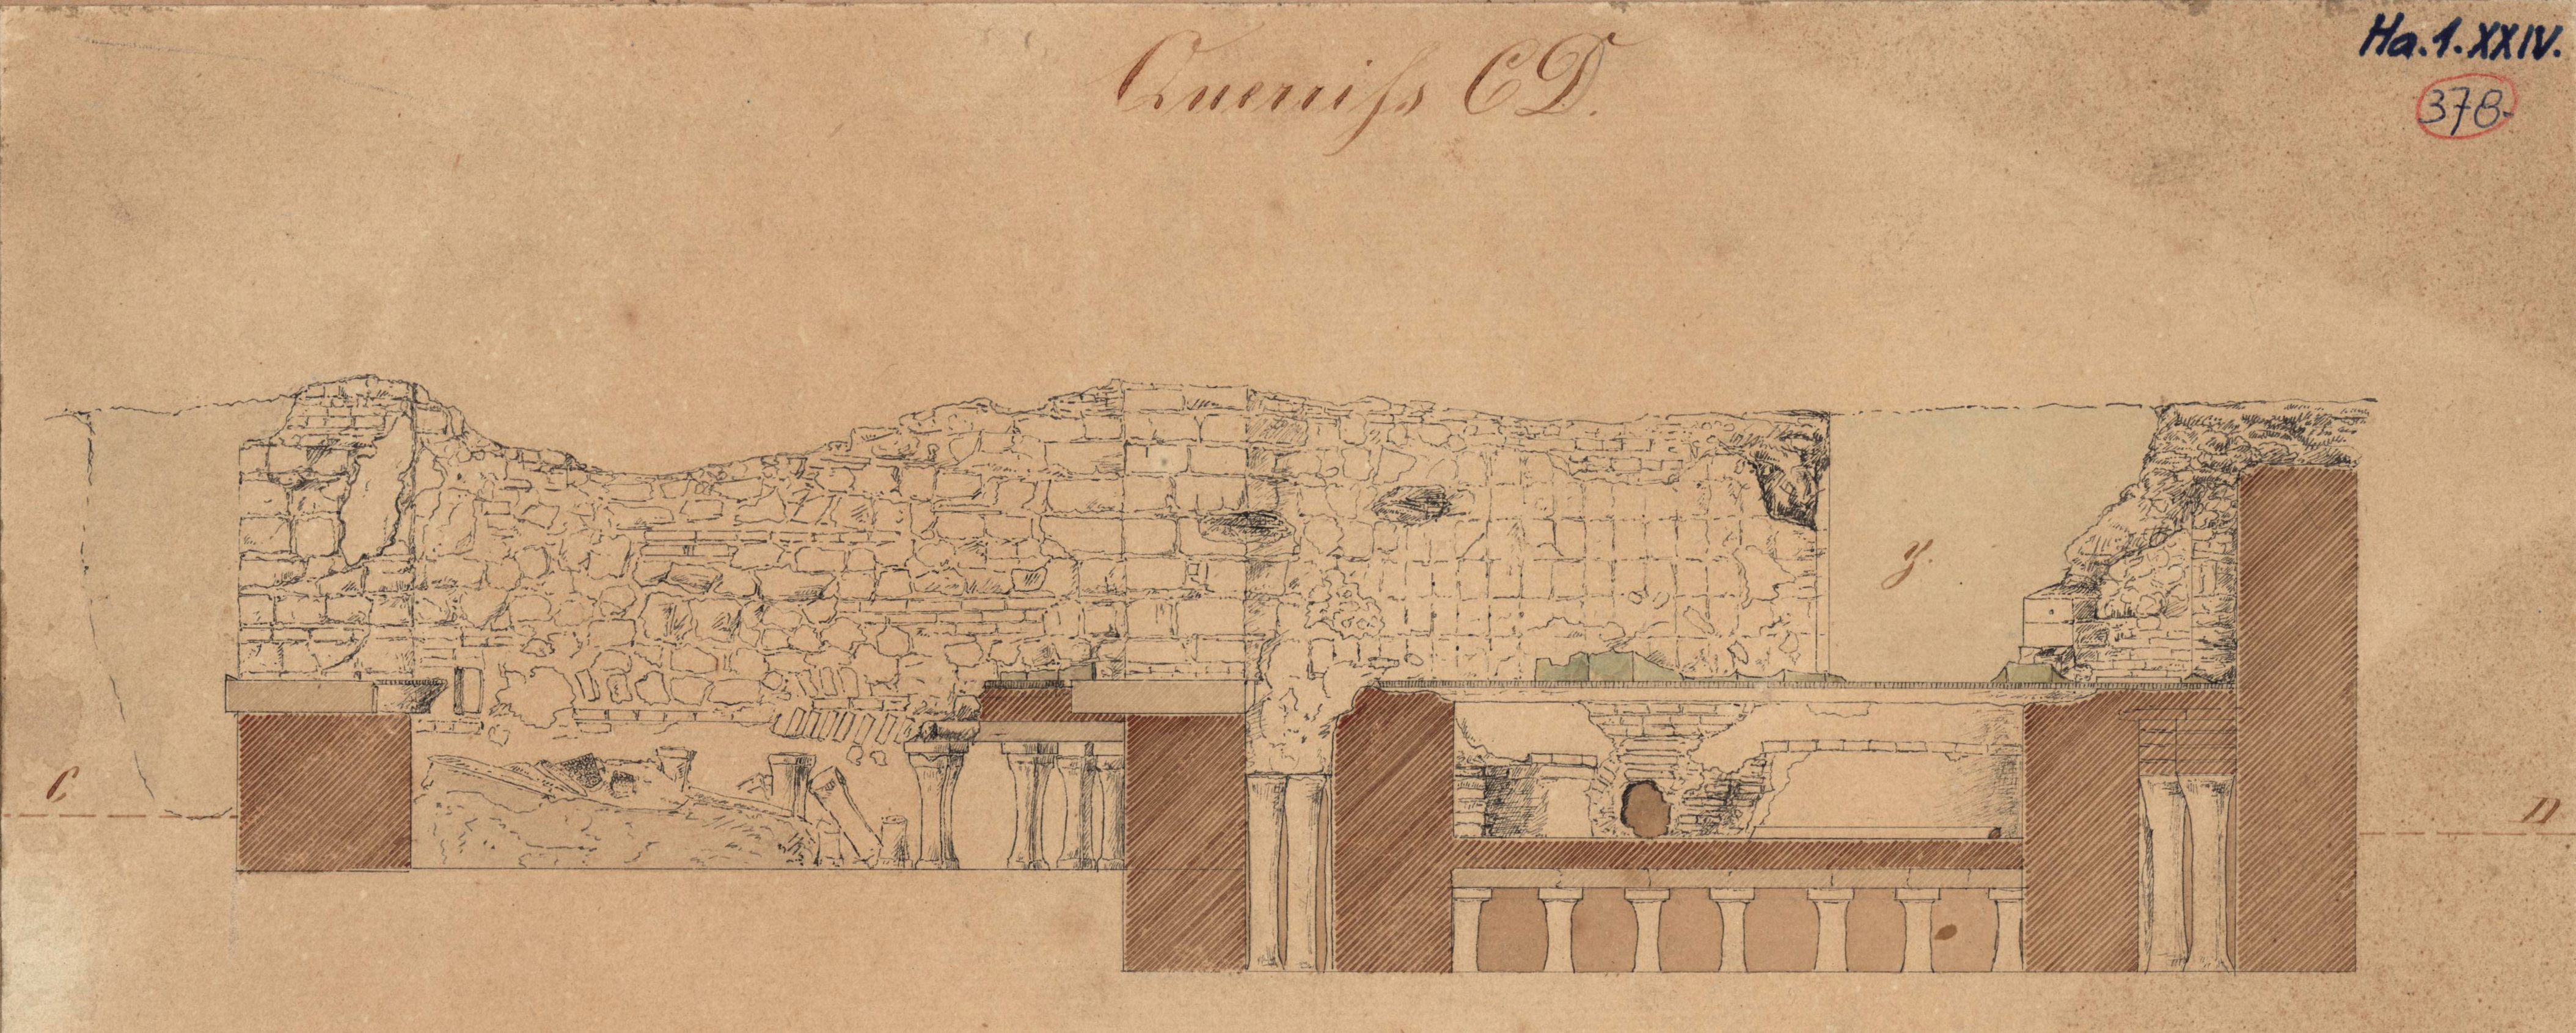 A palota fürdőjének részlete 1854-ben. Zsigmondy Gusztáv rajza